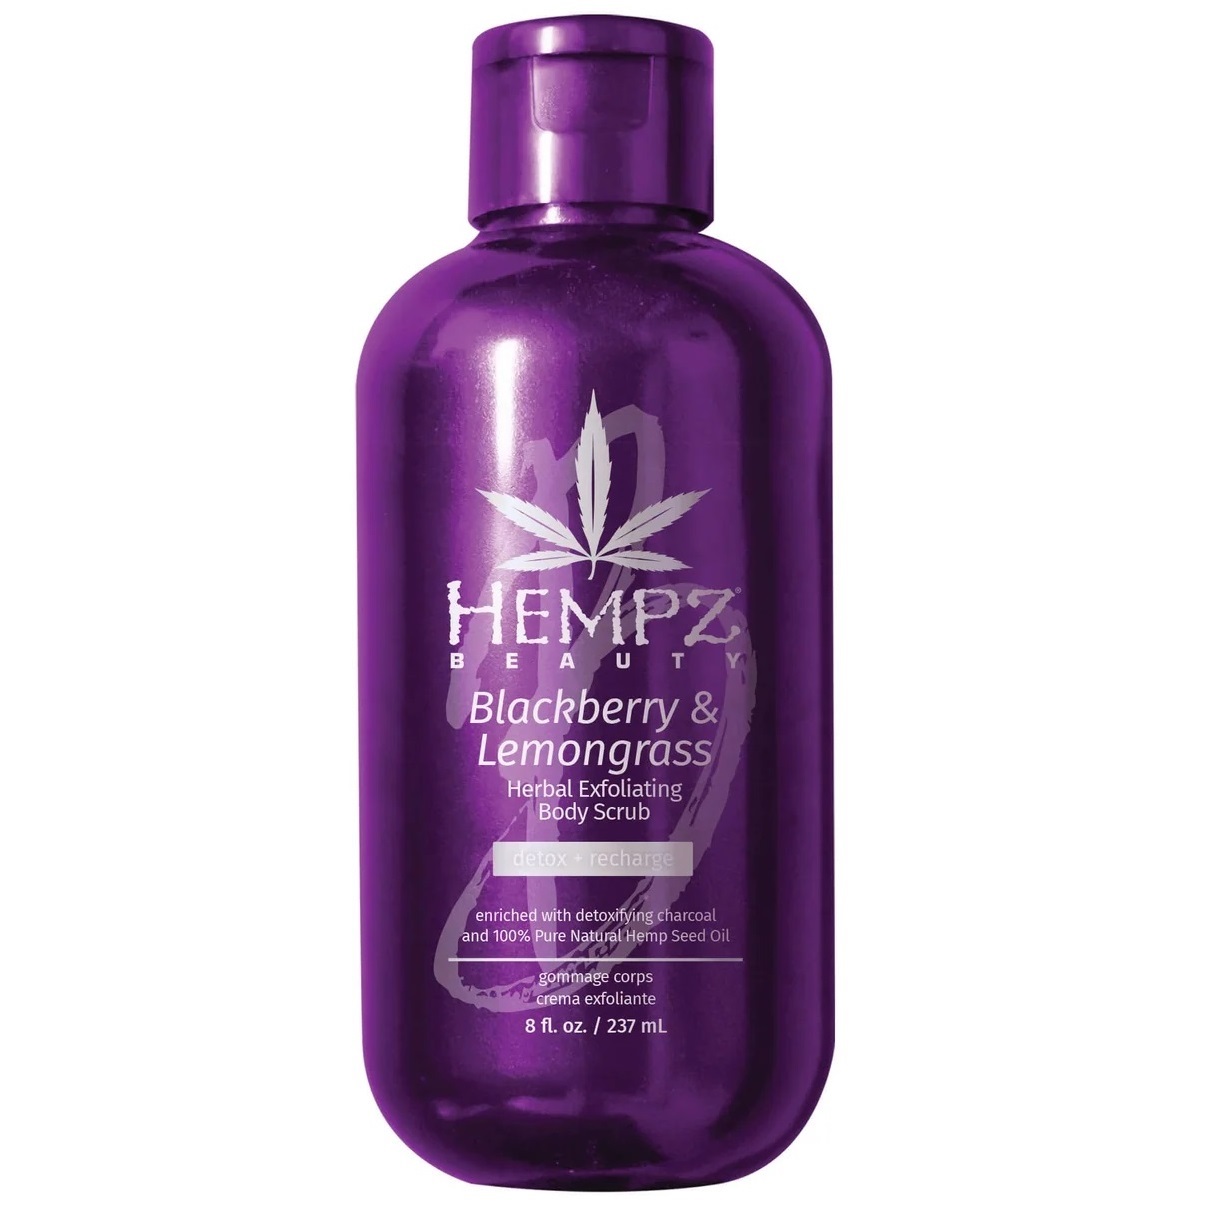 Hempz Скраб для тела Beauty Blackberry & Lemongrass, 237 мл (Hempz, Ежевика и лемонграсс)